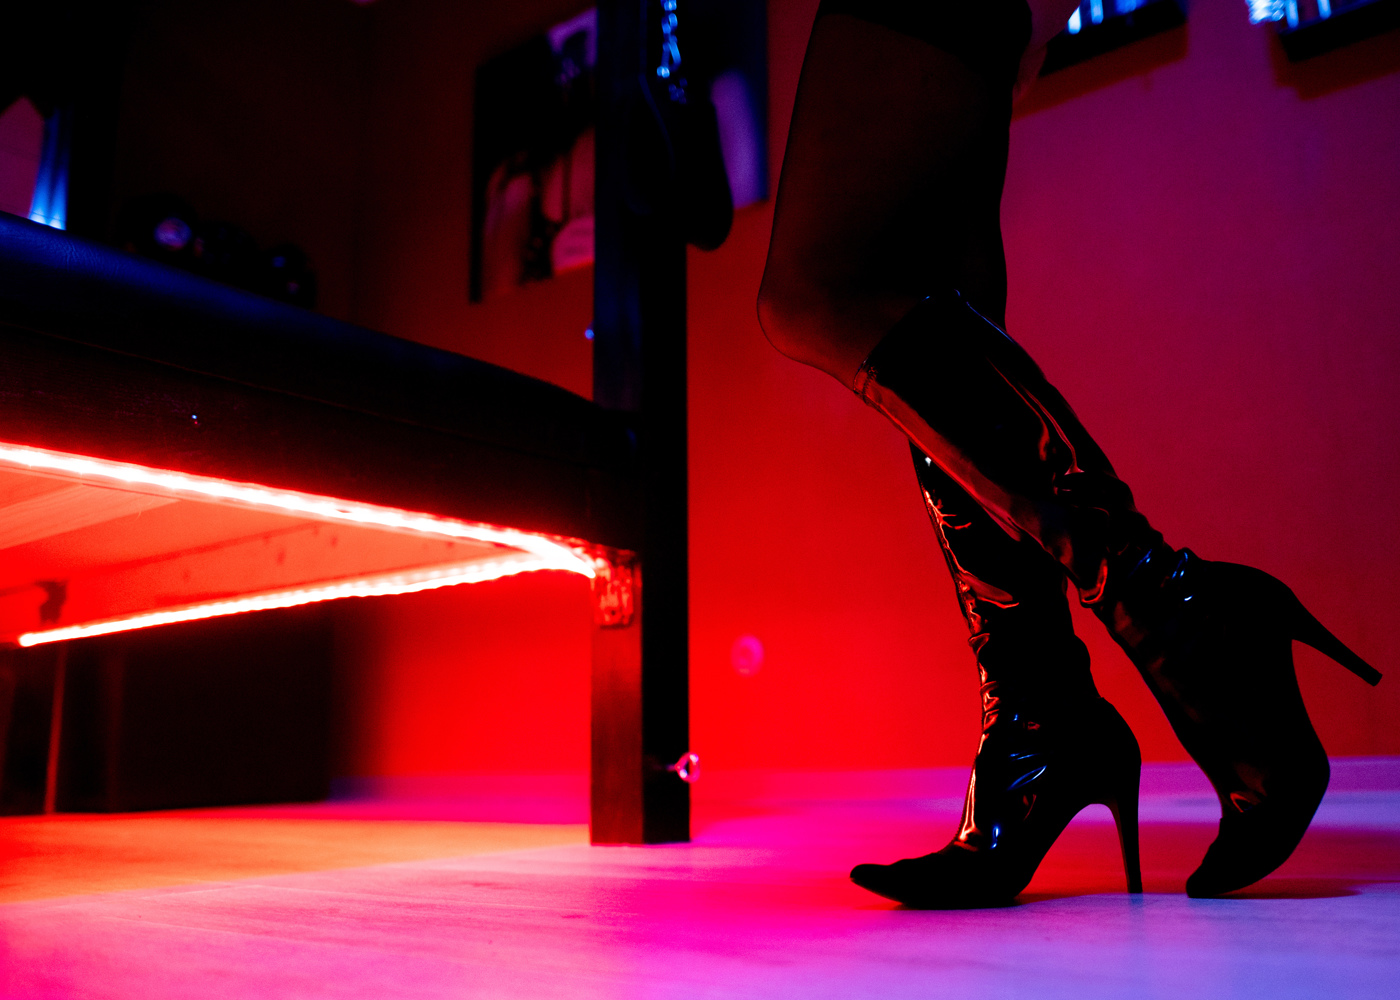 Sexkaufverbot Prostituierte Wehren Sich Gegen Das Nordische Modell Niusde